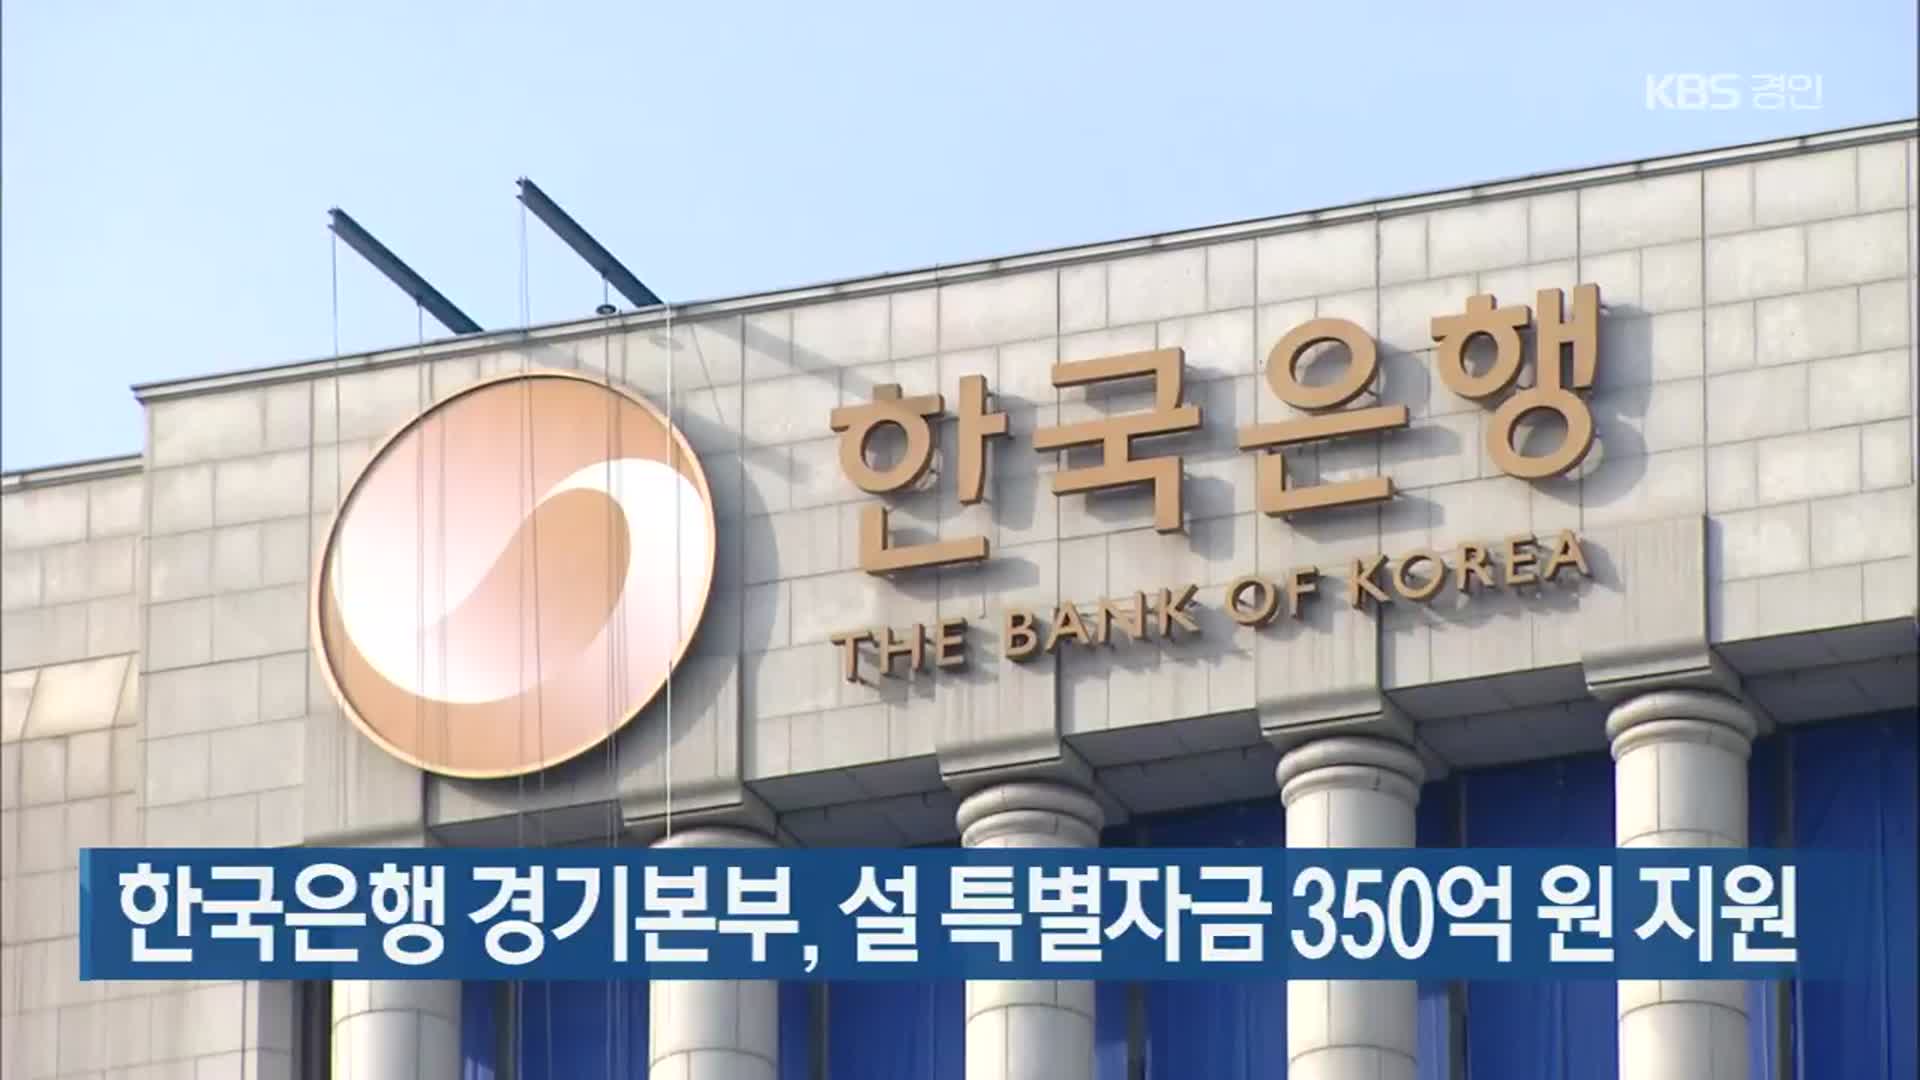 한국은행 경기본부, 설 특별자금 350억 원 지원